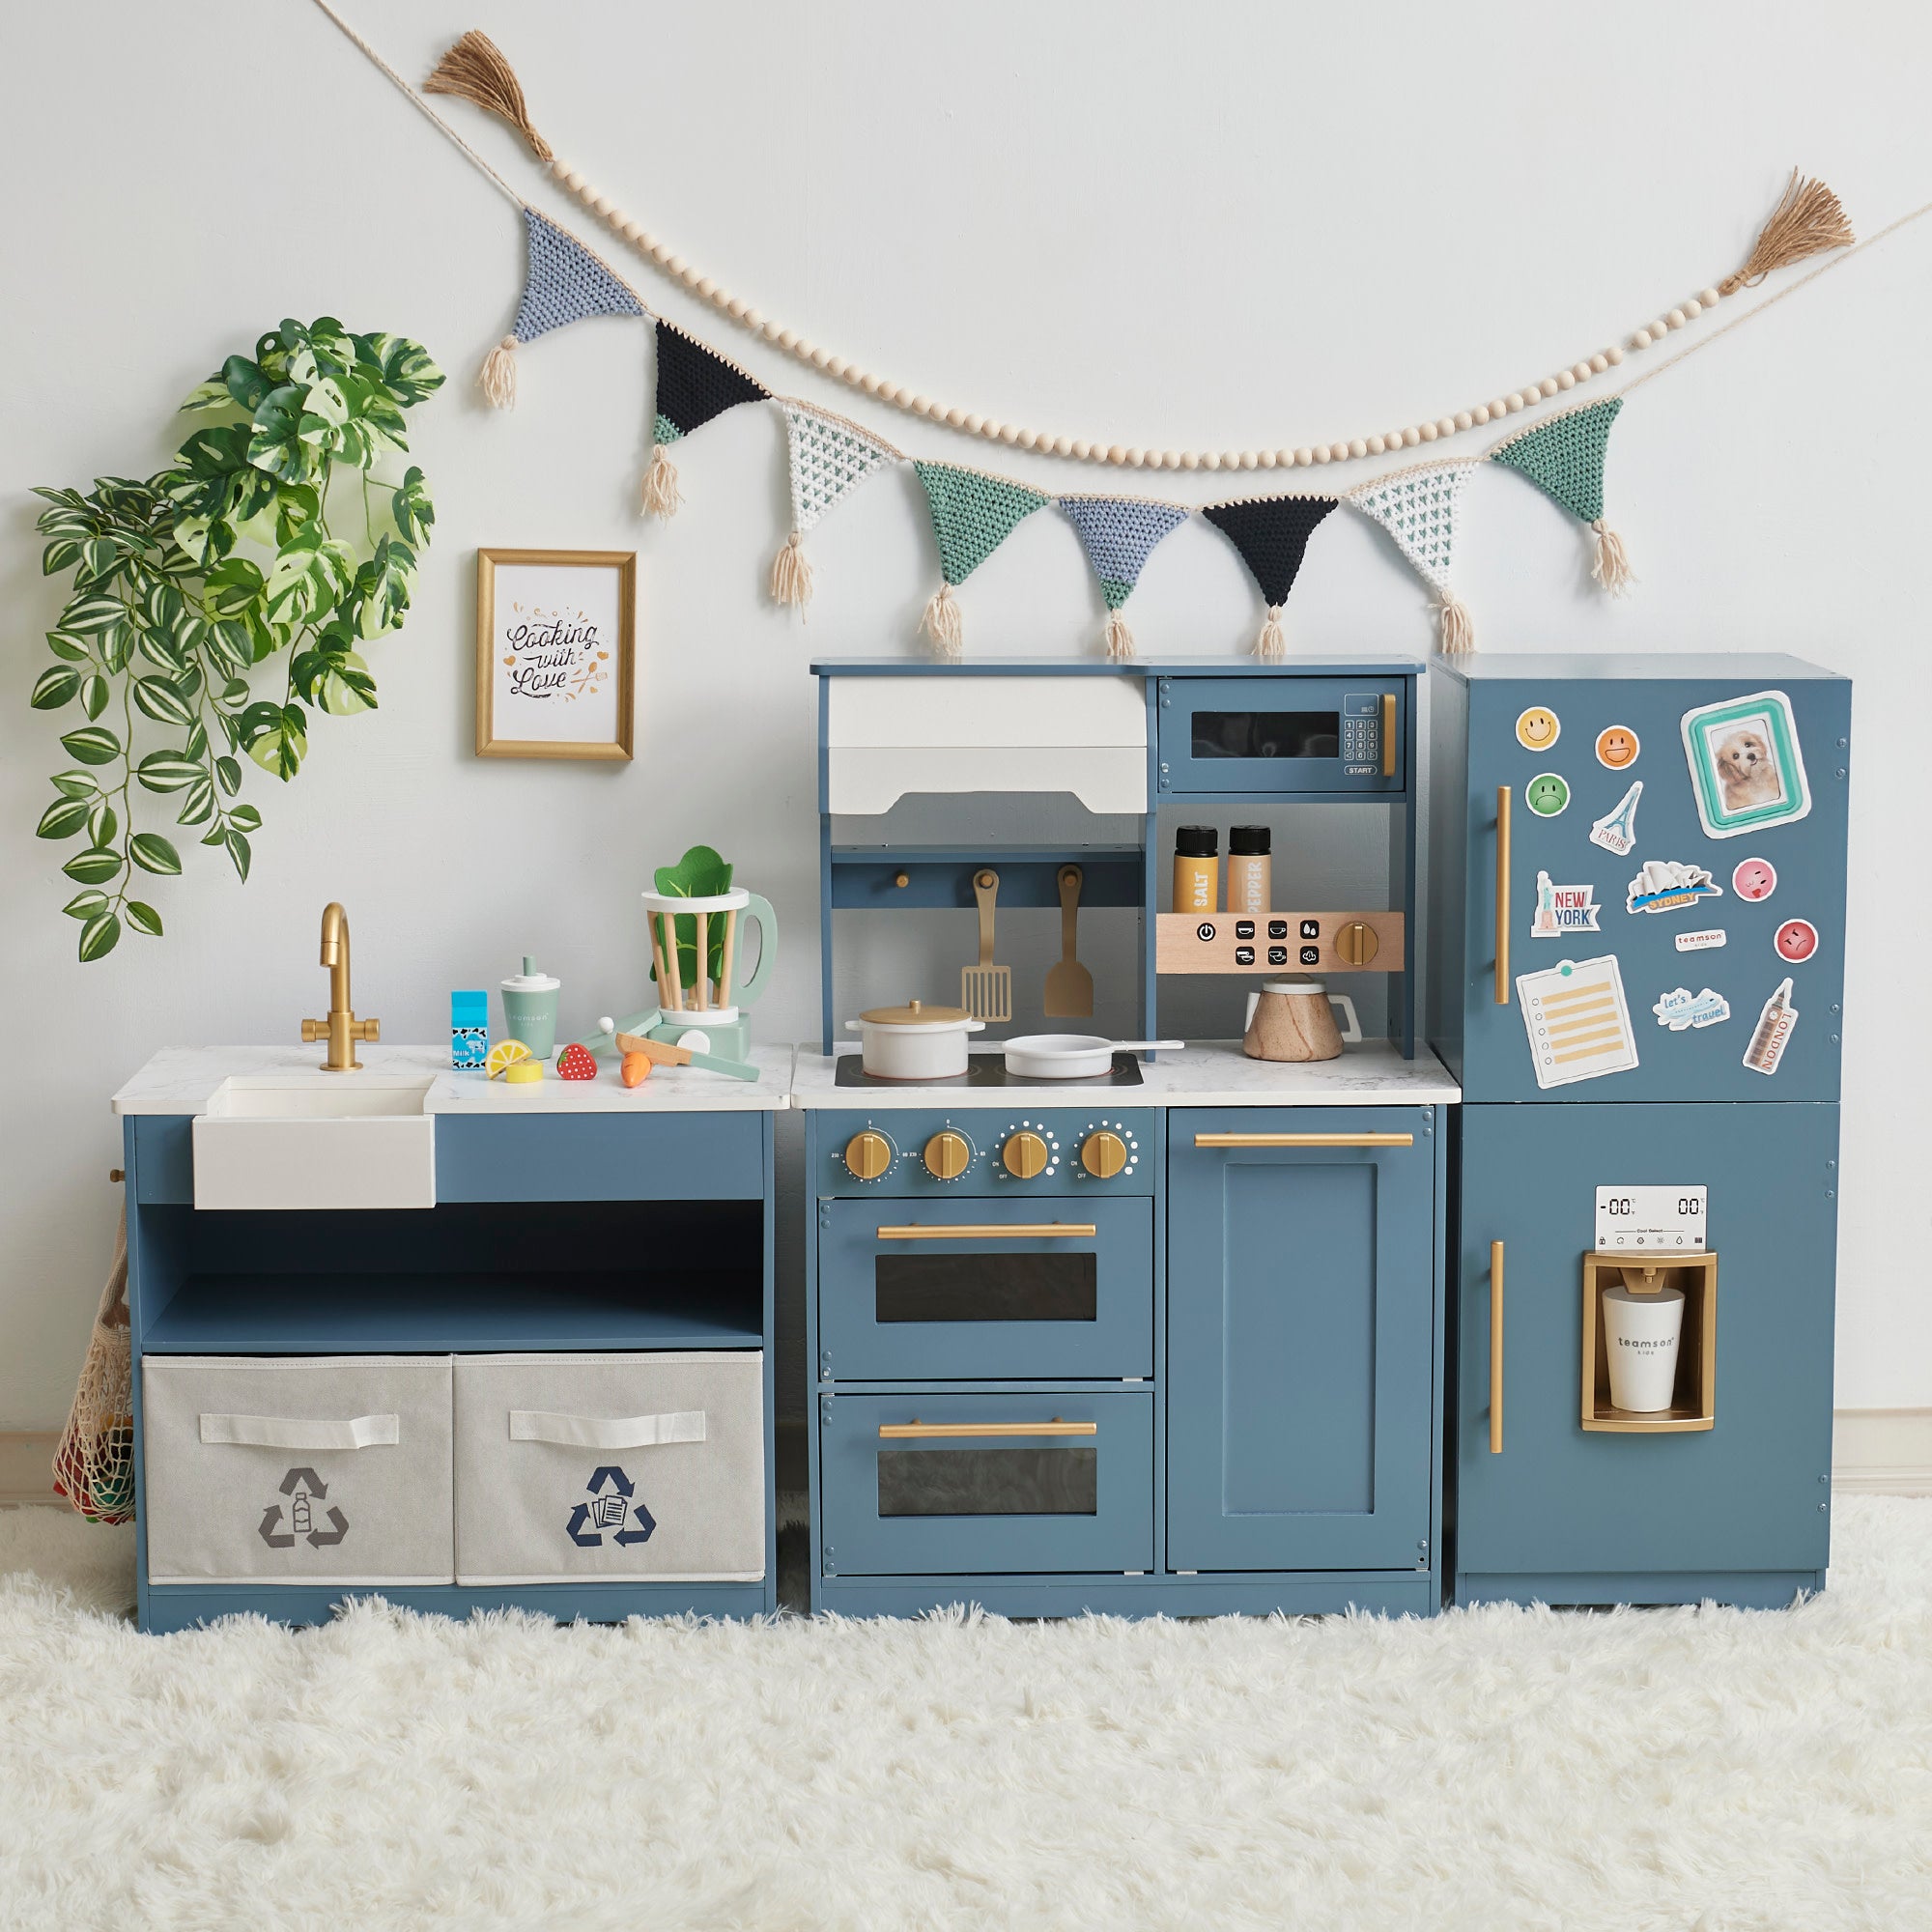 Brinjoy Kitchen Playset for Kids, Wooden Toddler Kitchen Set w/Curtains, Coffee Maker, Storage Shelf, Stove,Sink, Utensils, Light & Sound, Kids